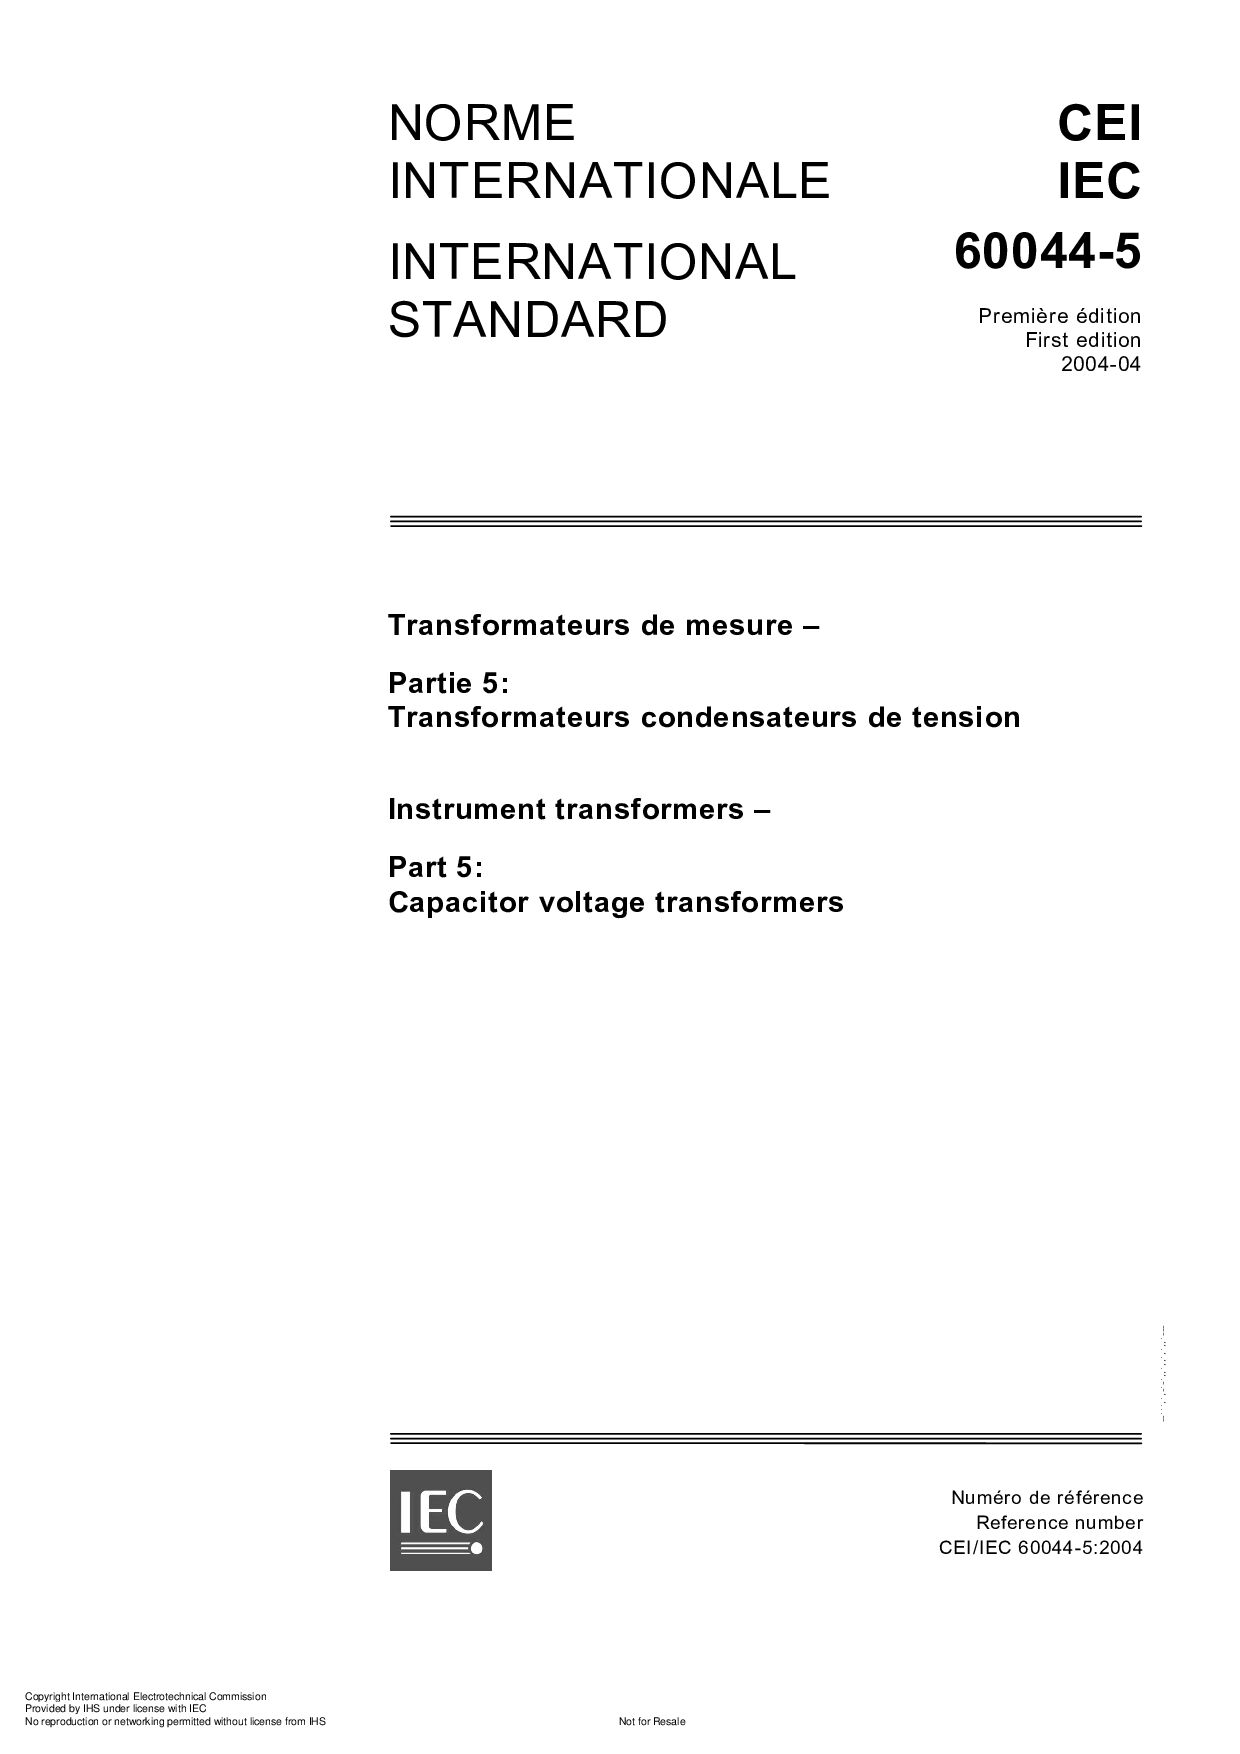 IEC 60044-5-2004